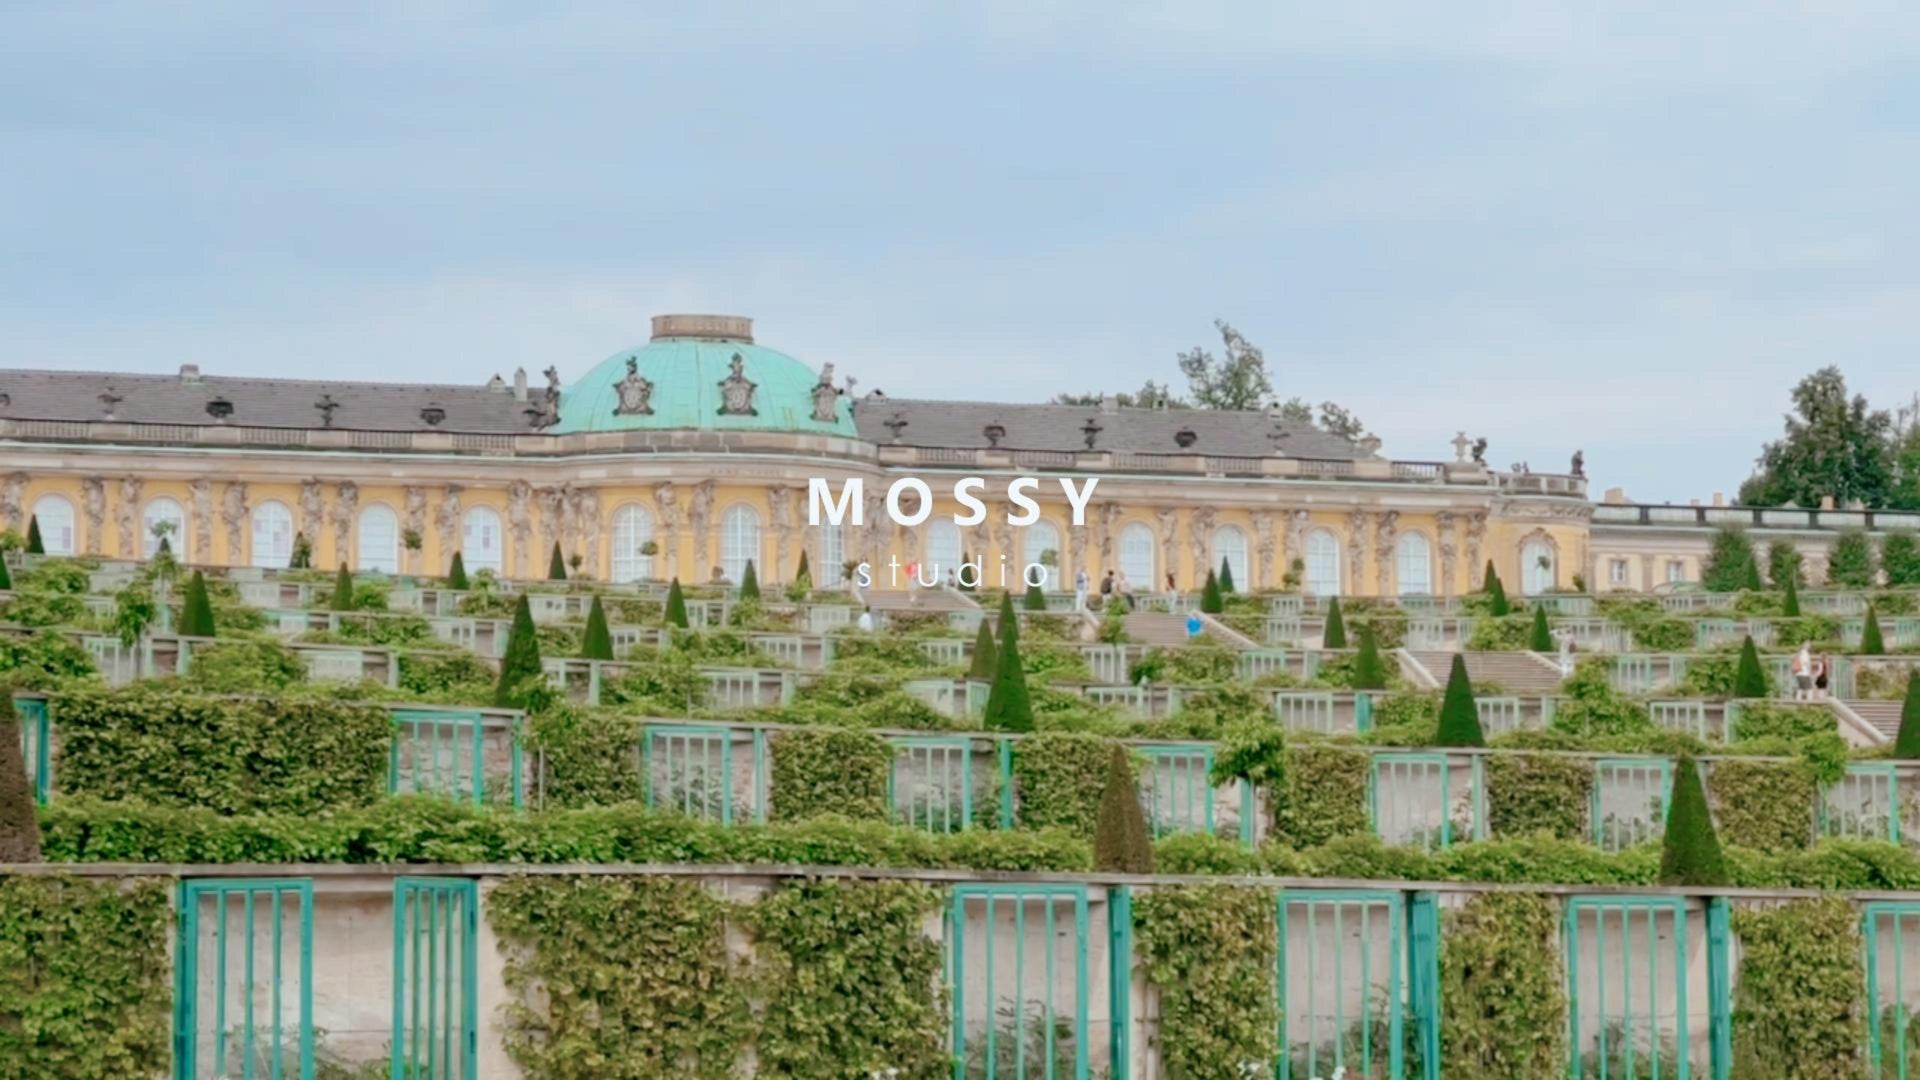 動画を読み込む: mossy studio be adventurous leather handbag minimalist elegant